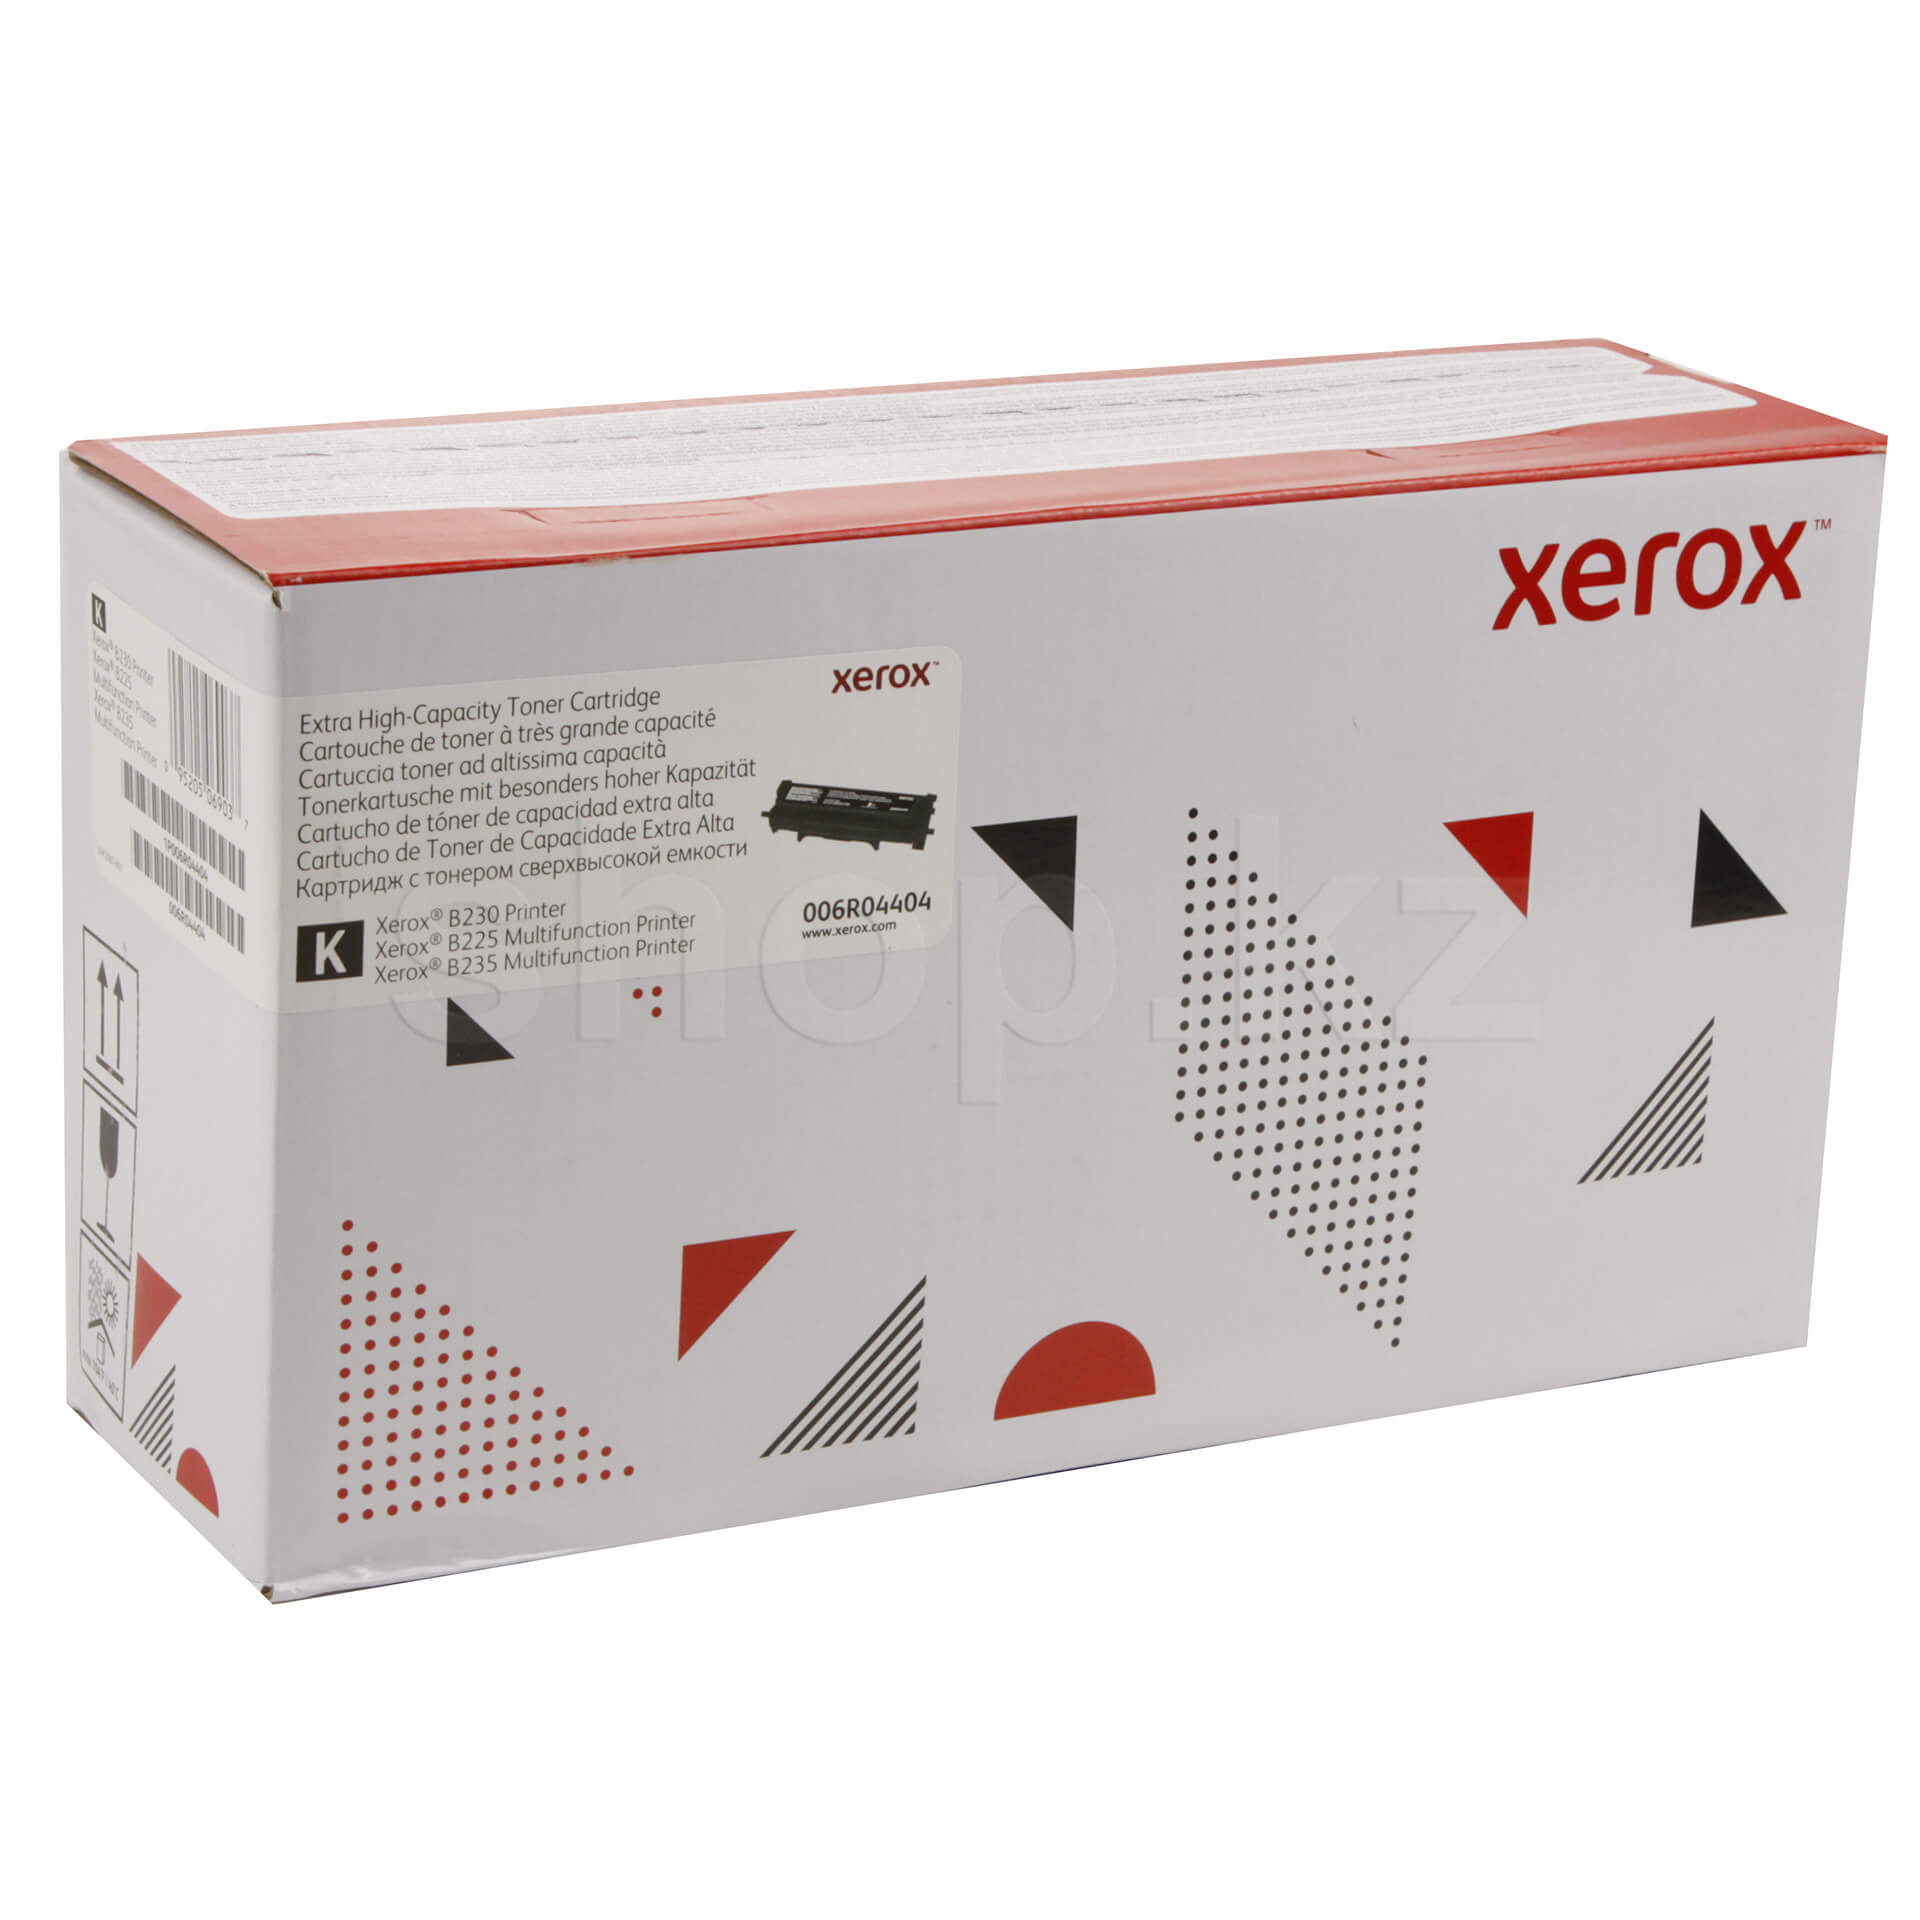 Xerox 006r04404 совместимый картридж